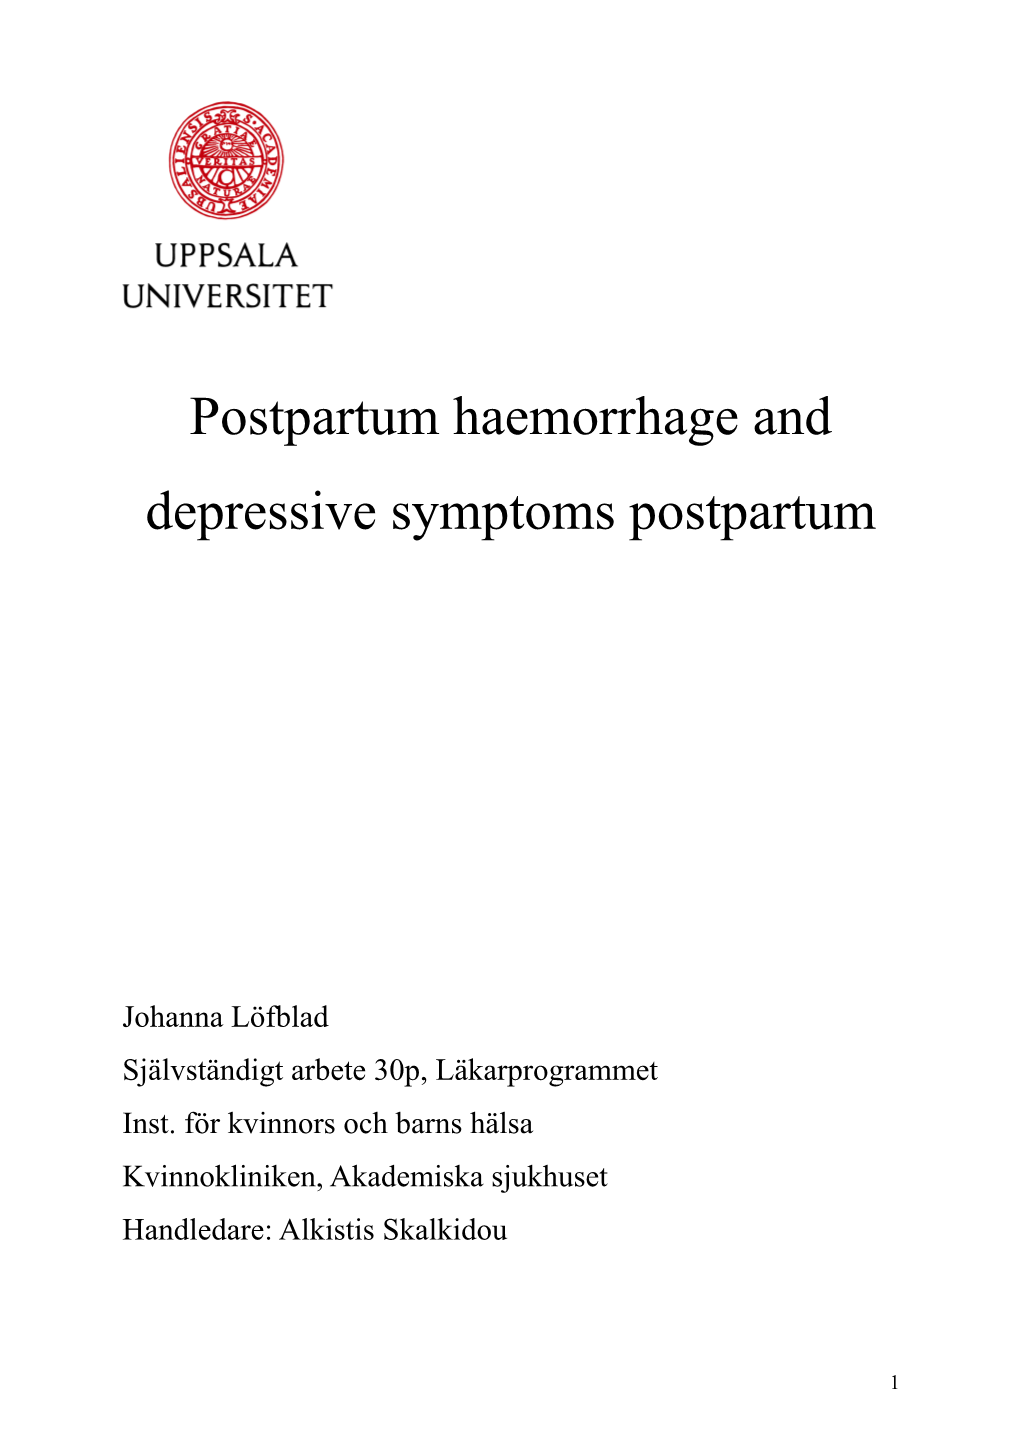 Postpartum Haemorrhage and Depressive Symptoms Postpartum